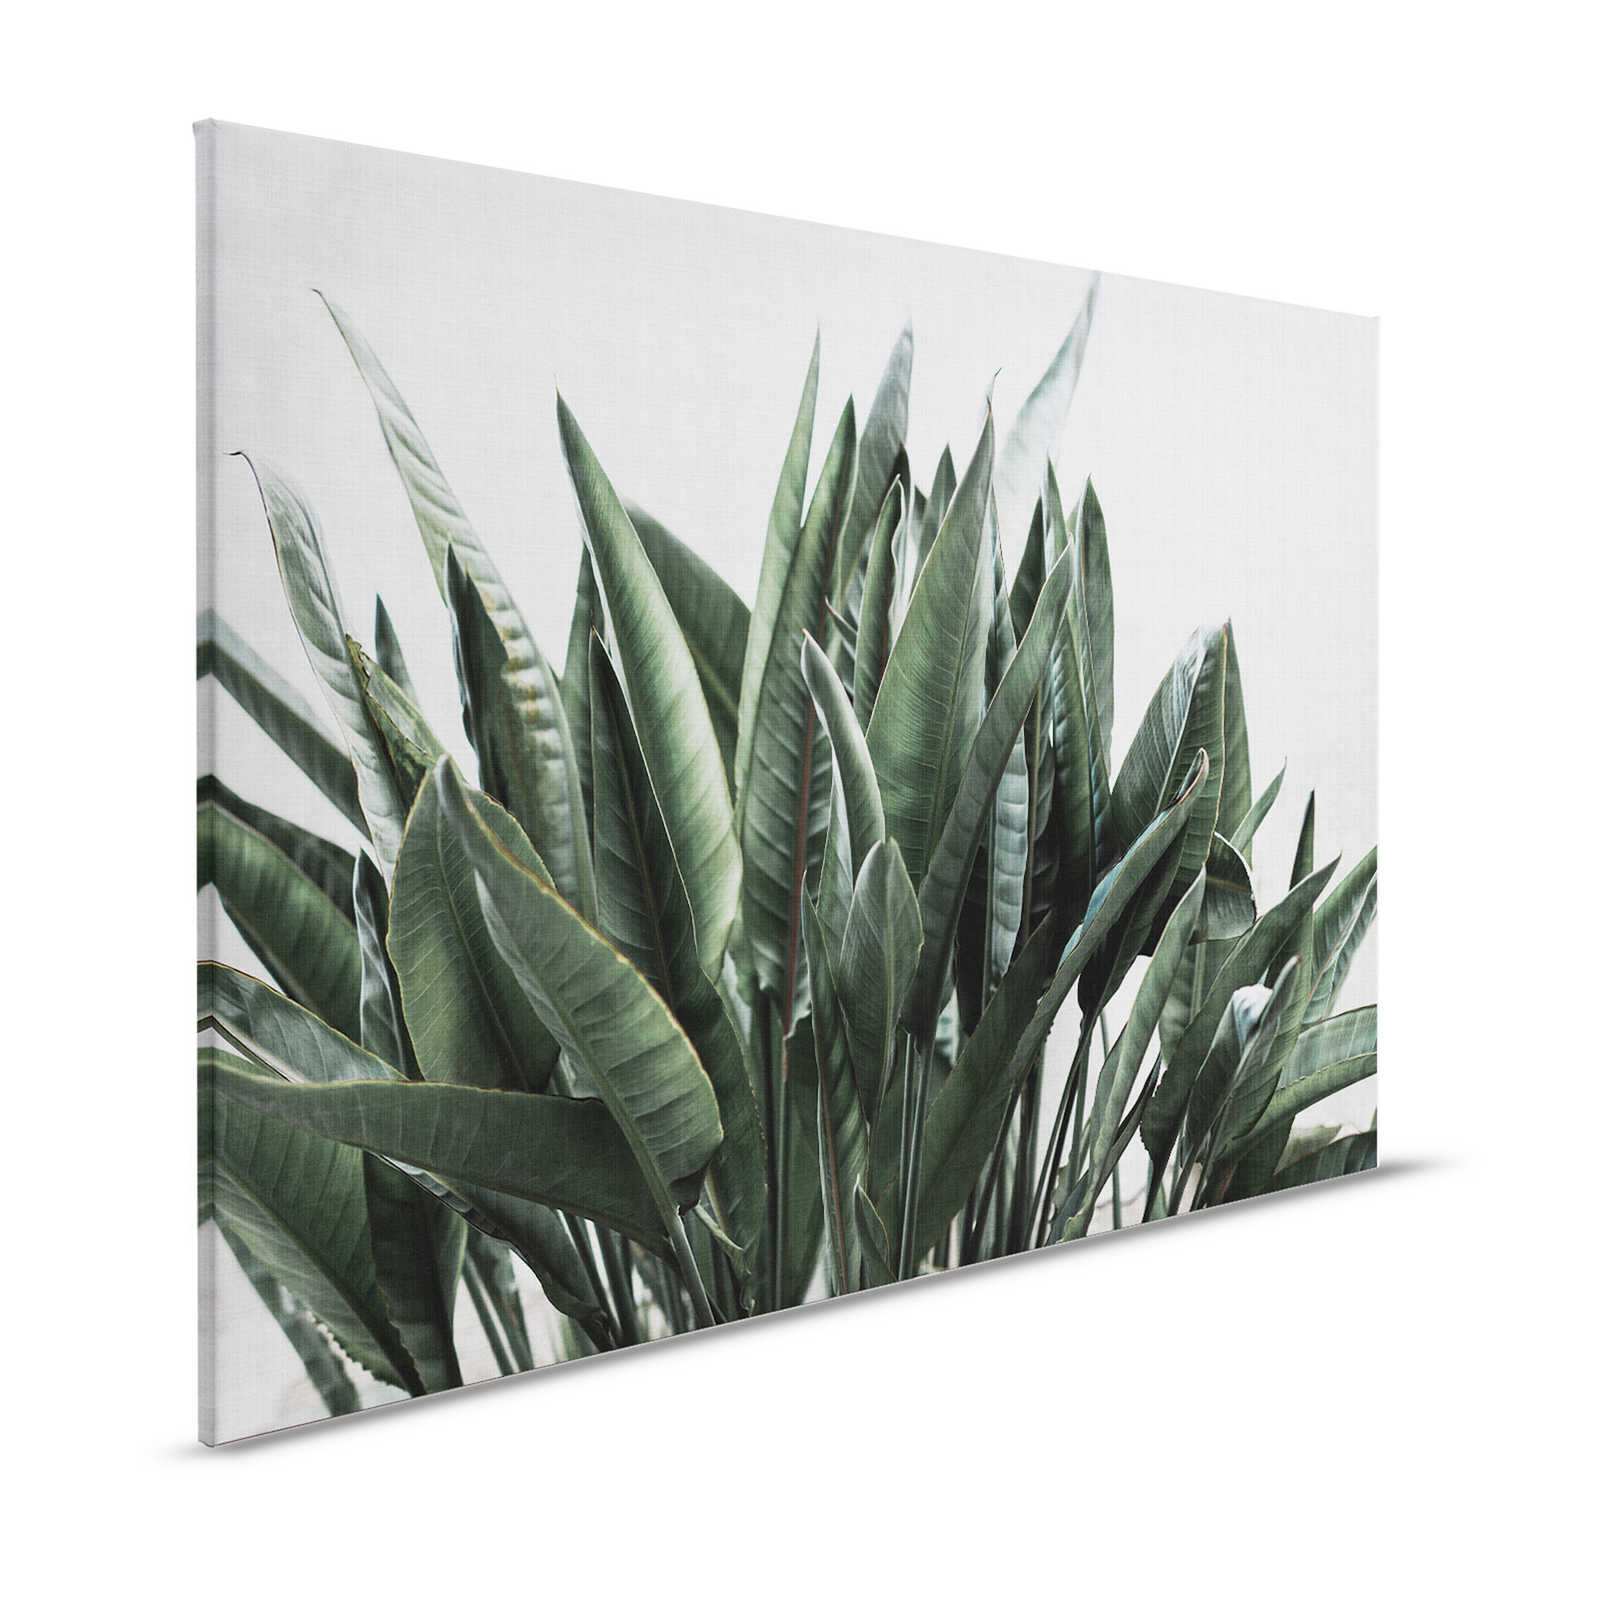 Giungla urbana 2 - Quadro su tela con foglie di palma, struttura in lino naturale piante esotiche - 1,20 m x 0,80 m
